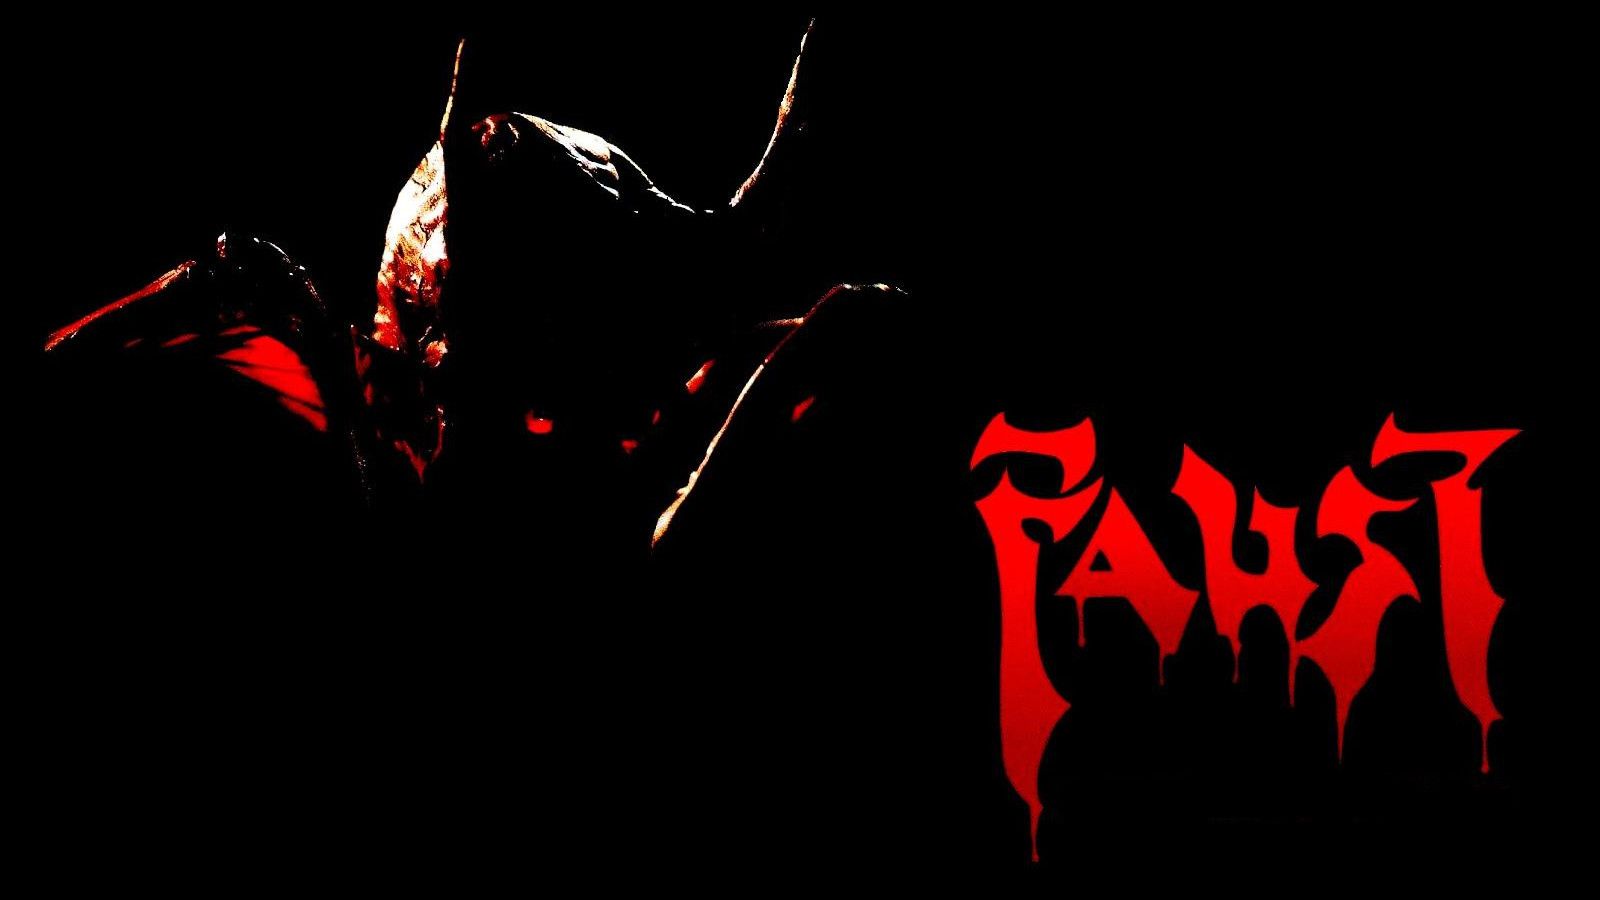 Cubierta de Faust: La venganza está en la sangre